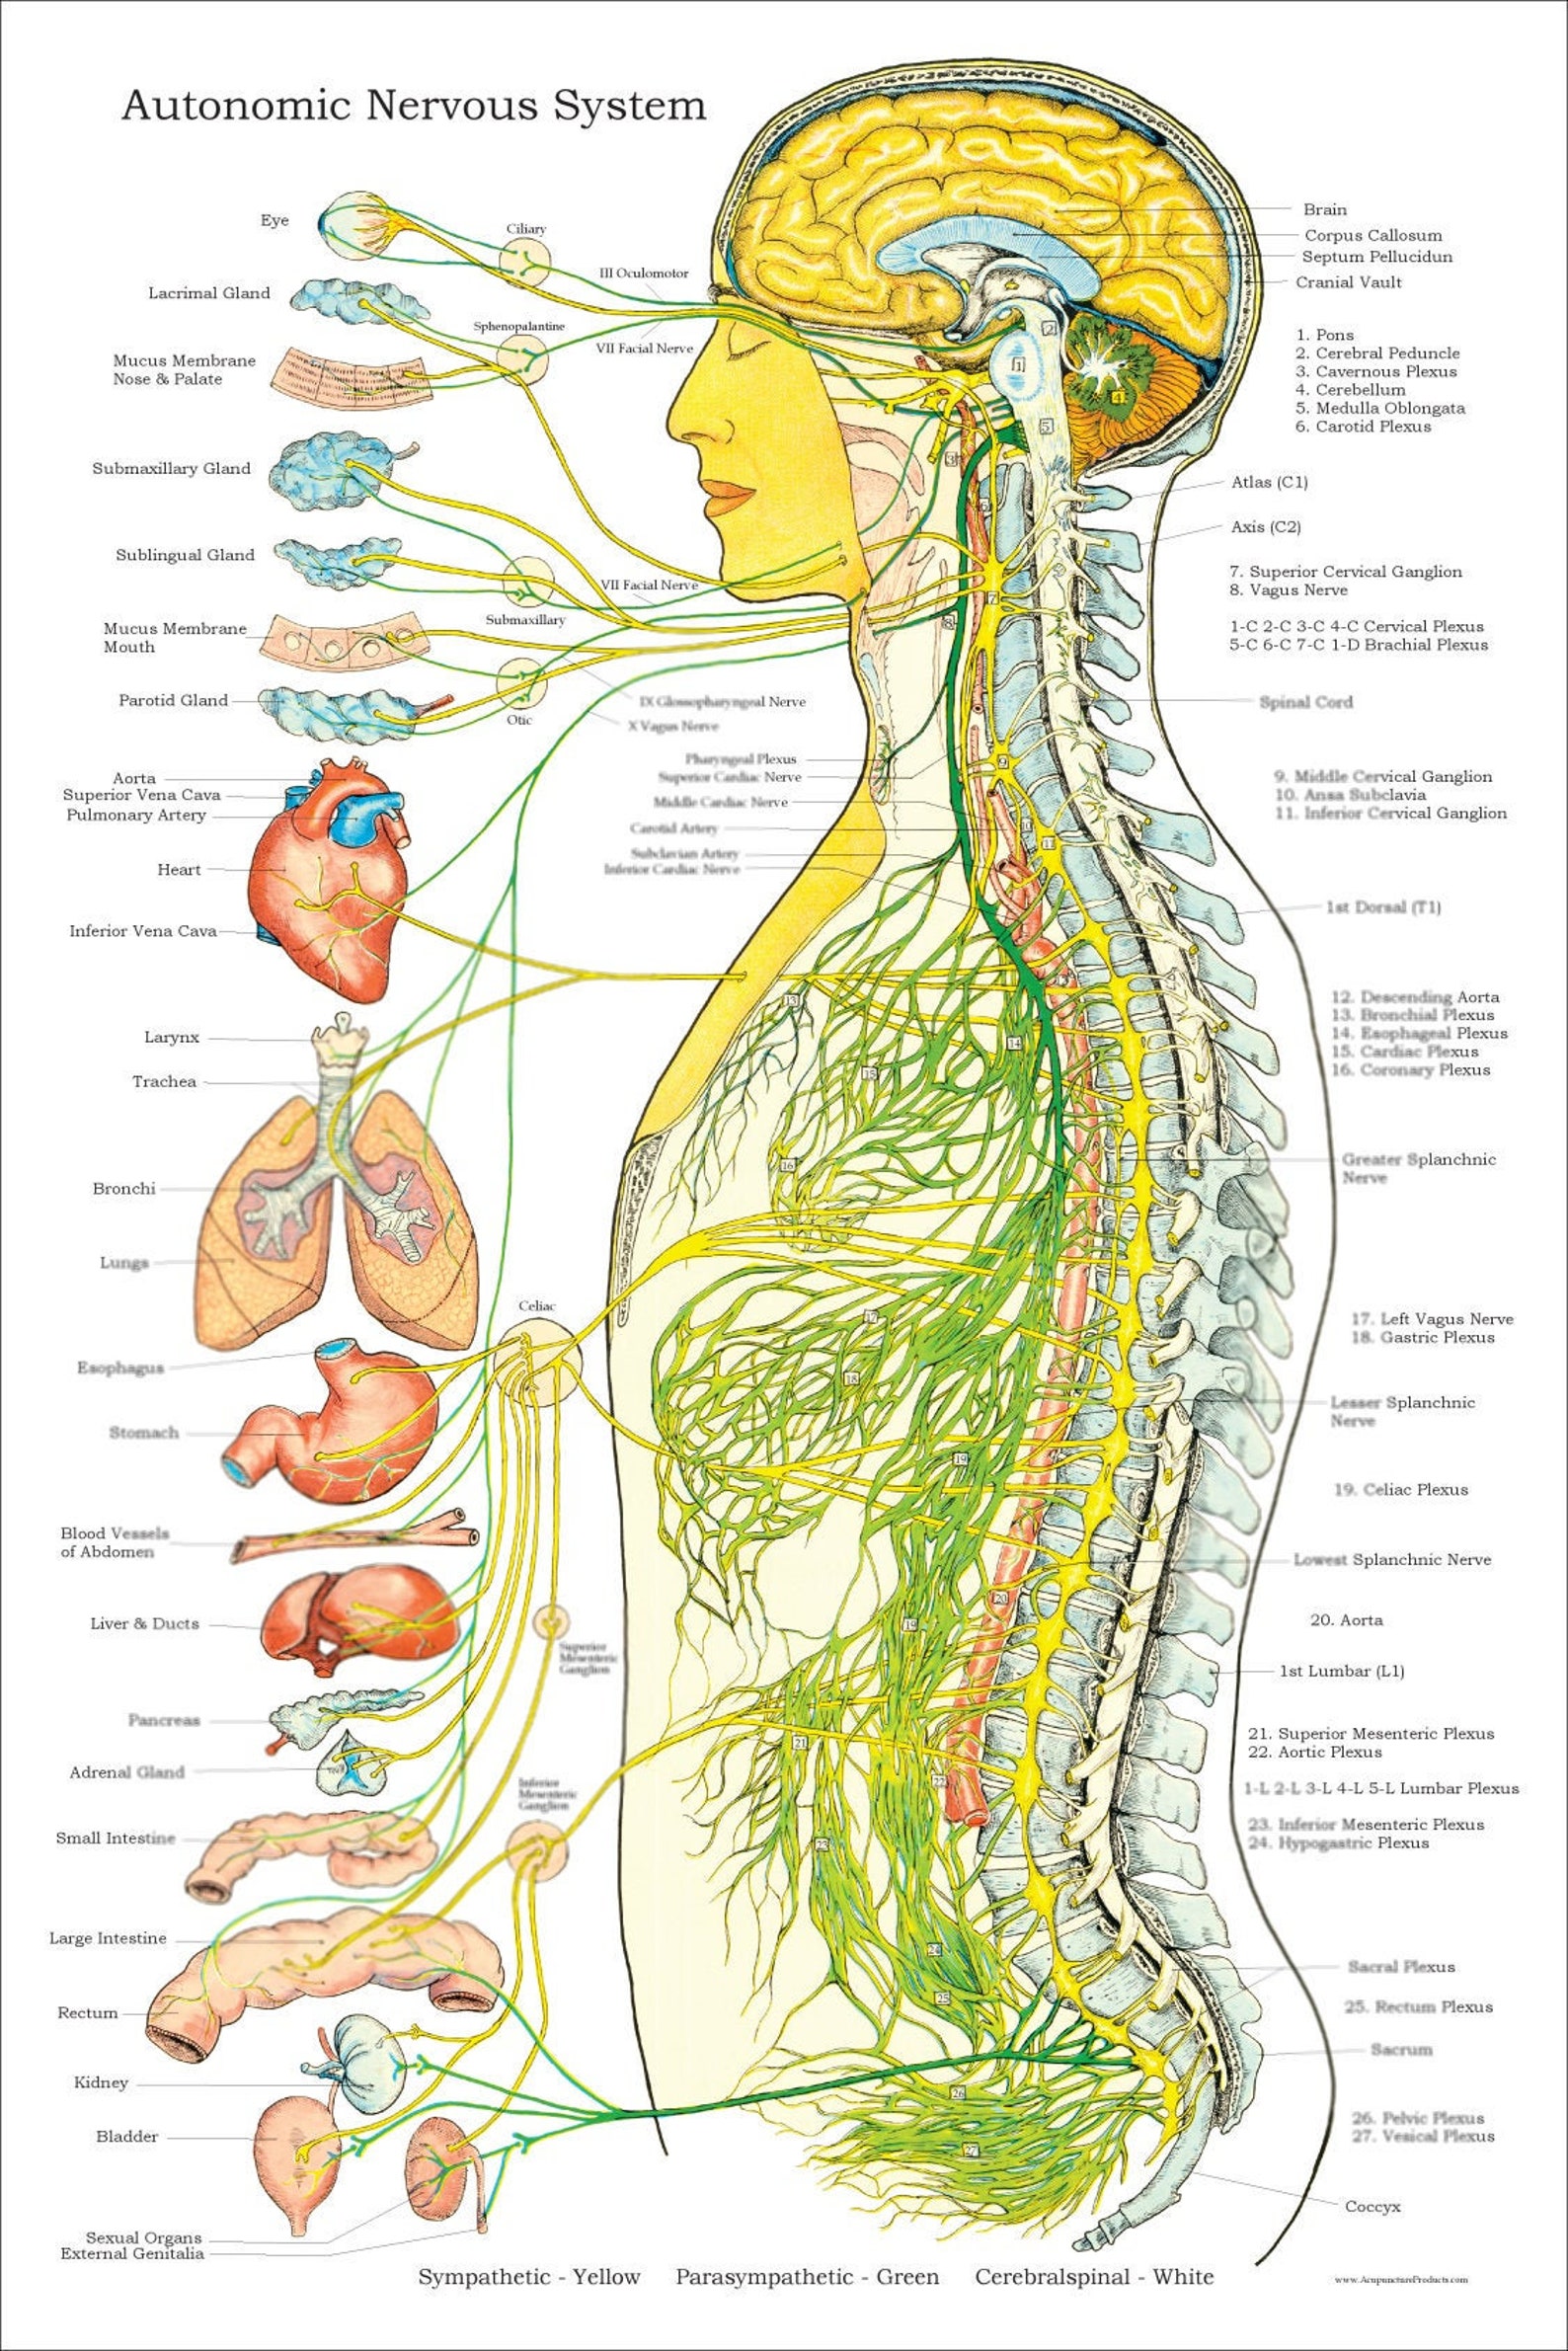 Нервная система латынь. Вегетативная нервная система плакат. Вегетативная нервная система плакат анатомия. Нервная система человека анатомический атлас. Нервная система человека плакат анатомия.